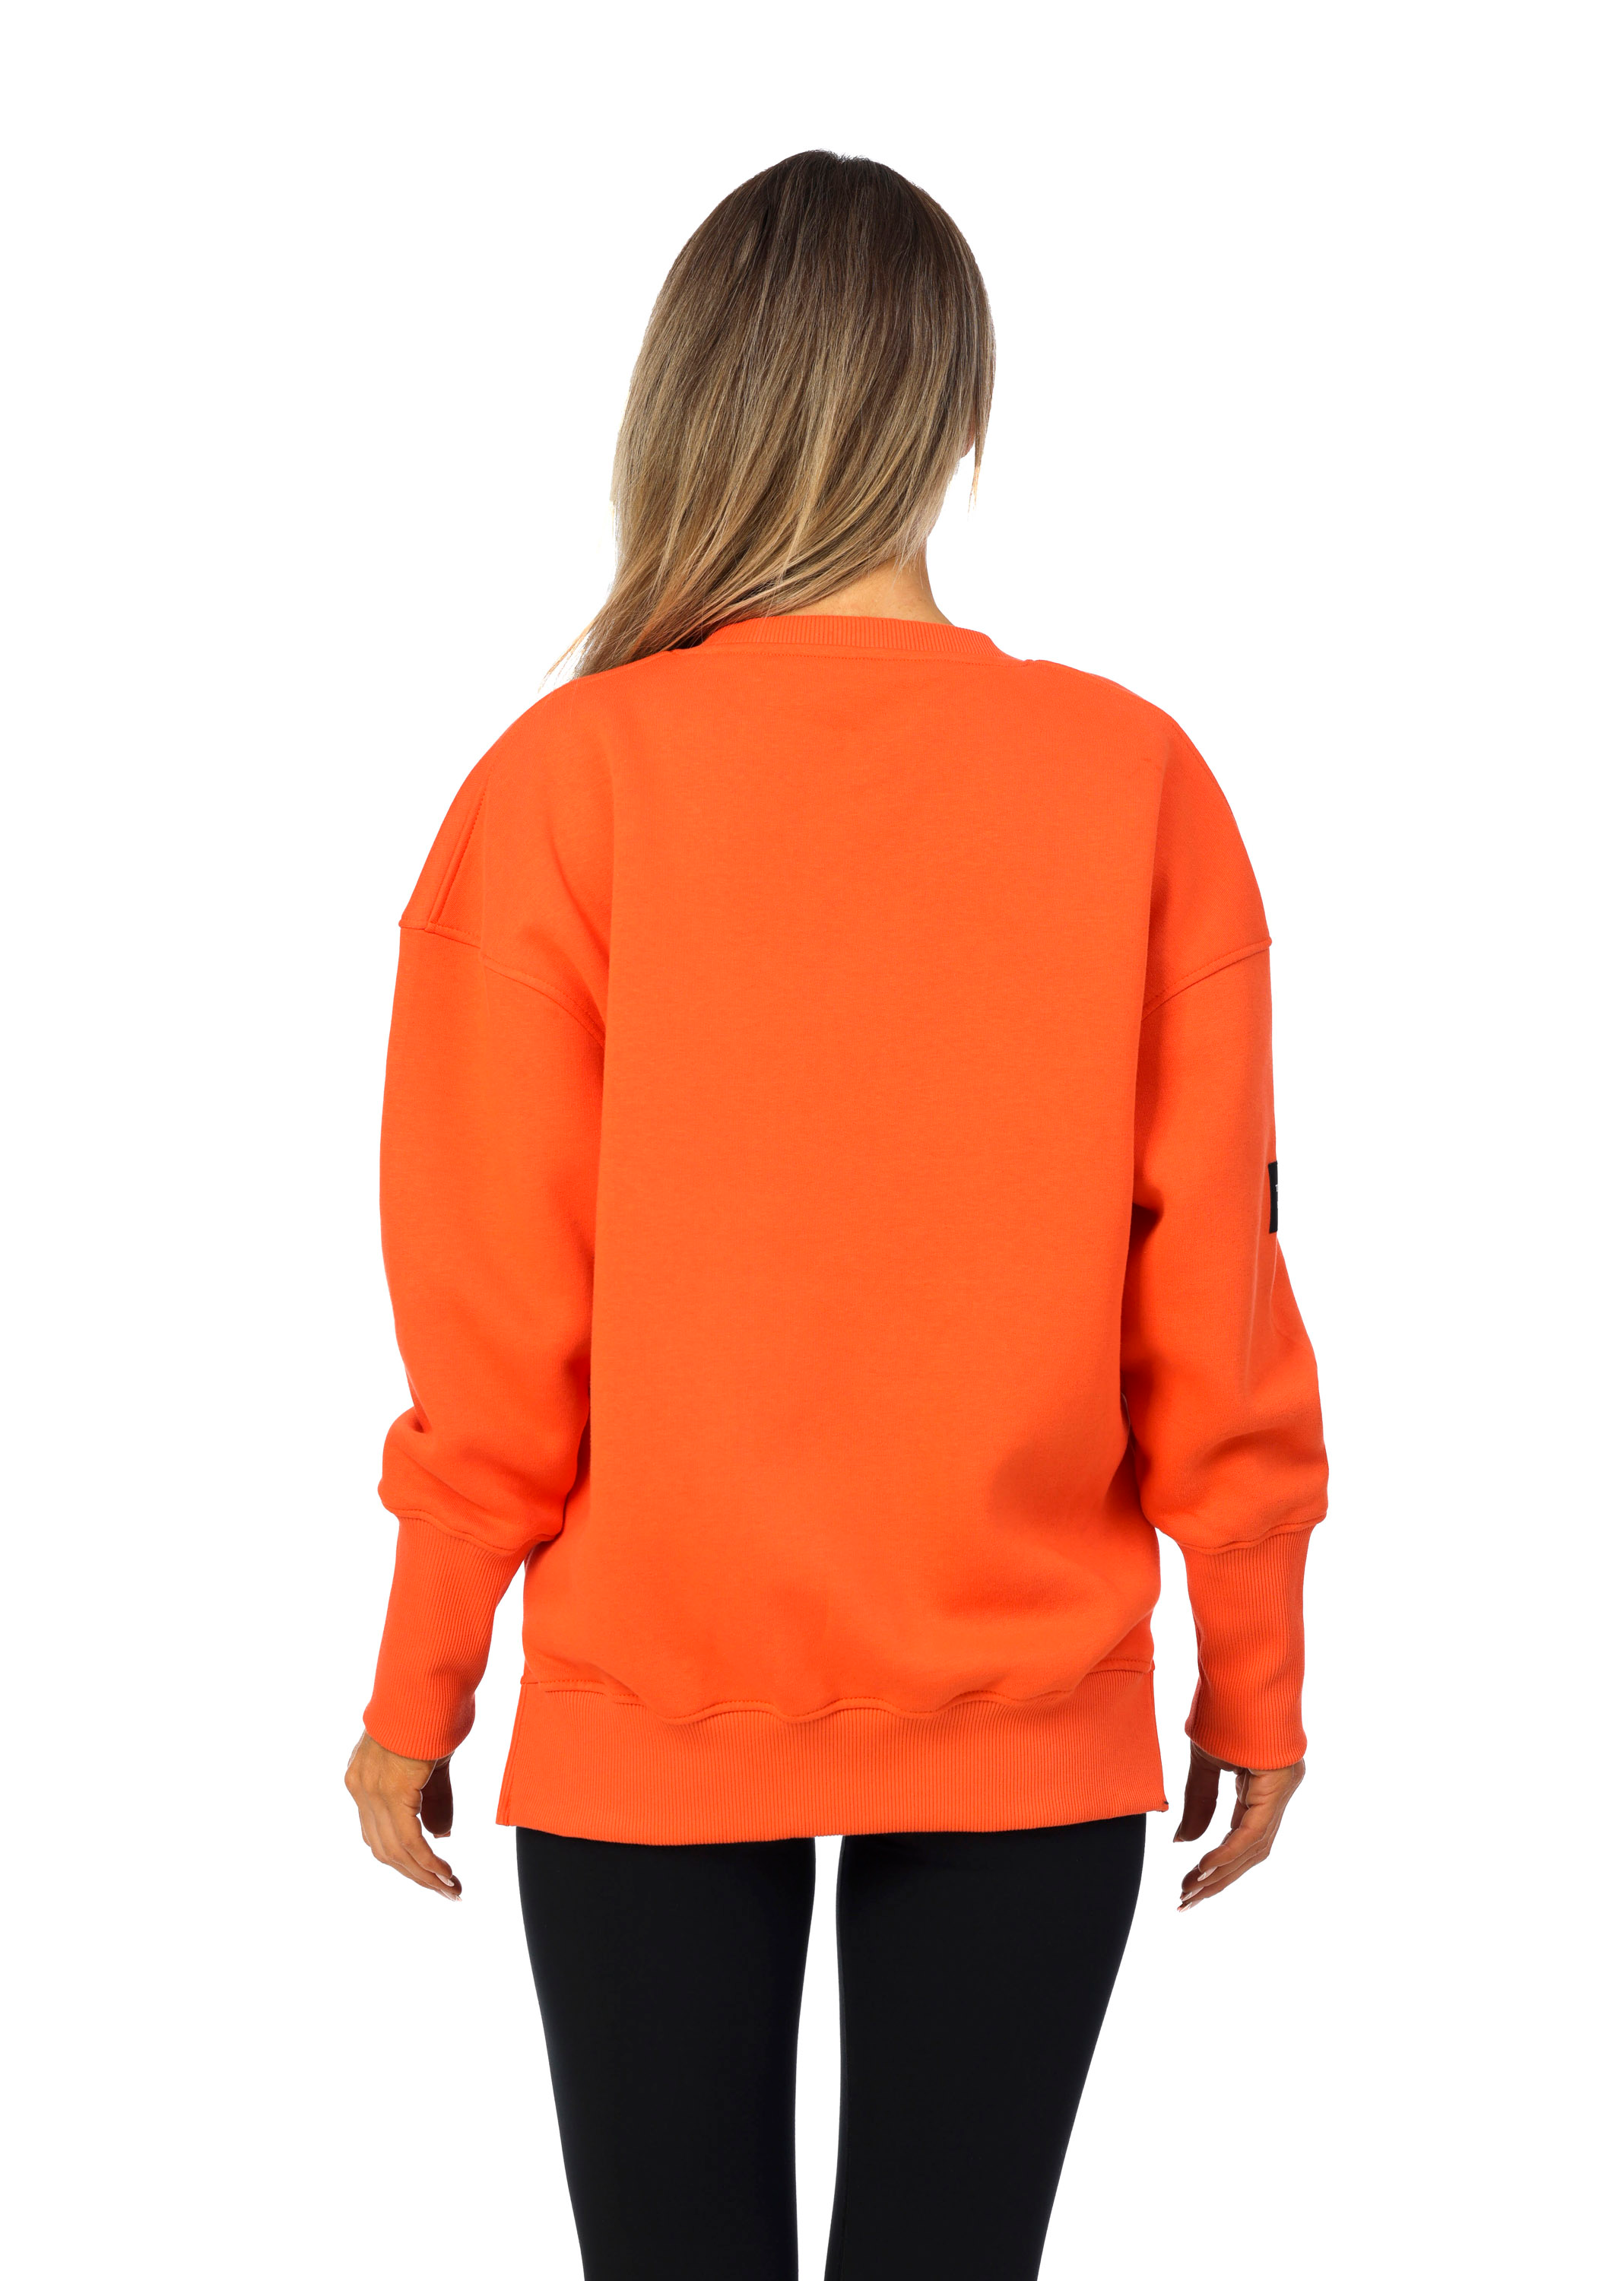 Heroic Sweatshirt in Orange Crush